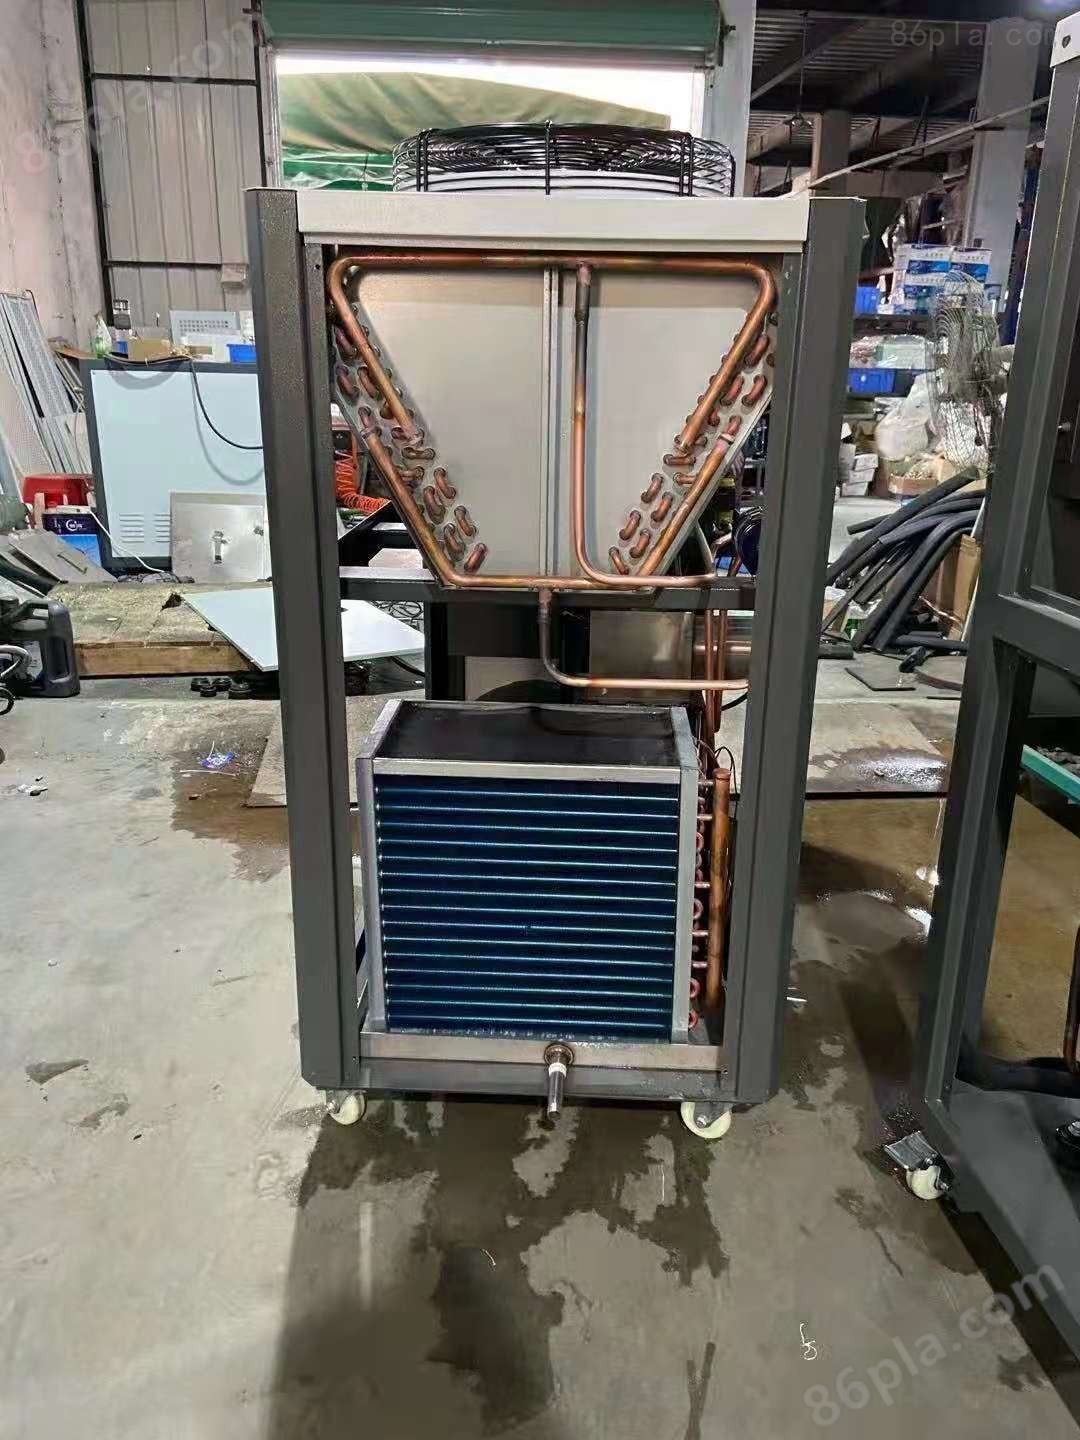 隧道炉冷风机 工业烤箱制冷机 烤箱冷却机